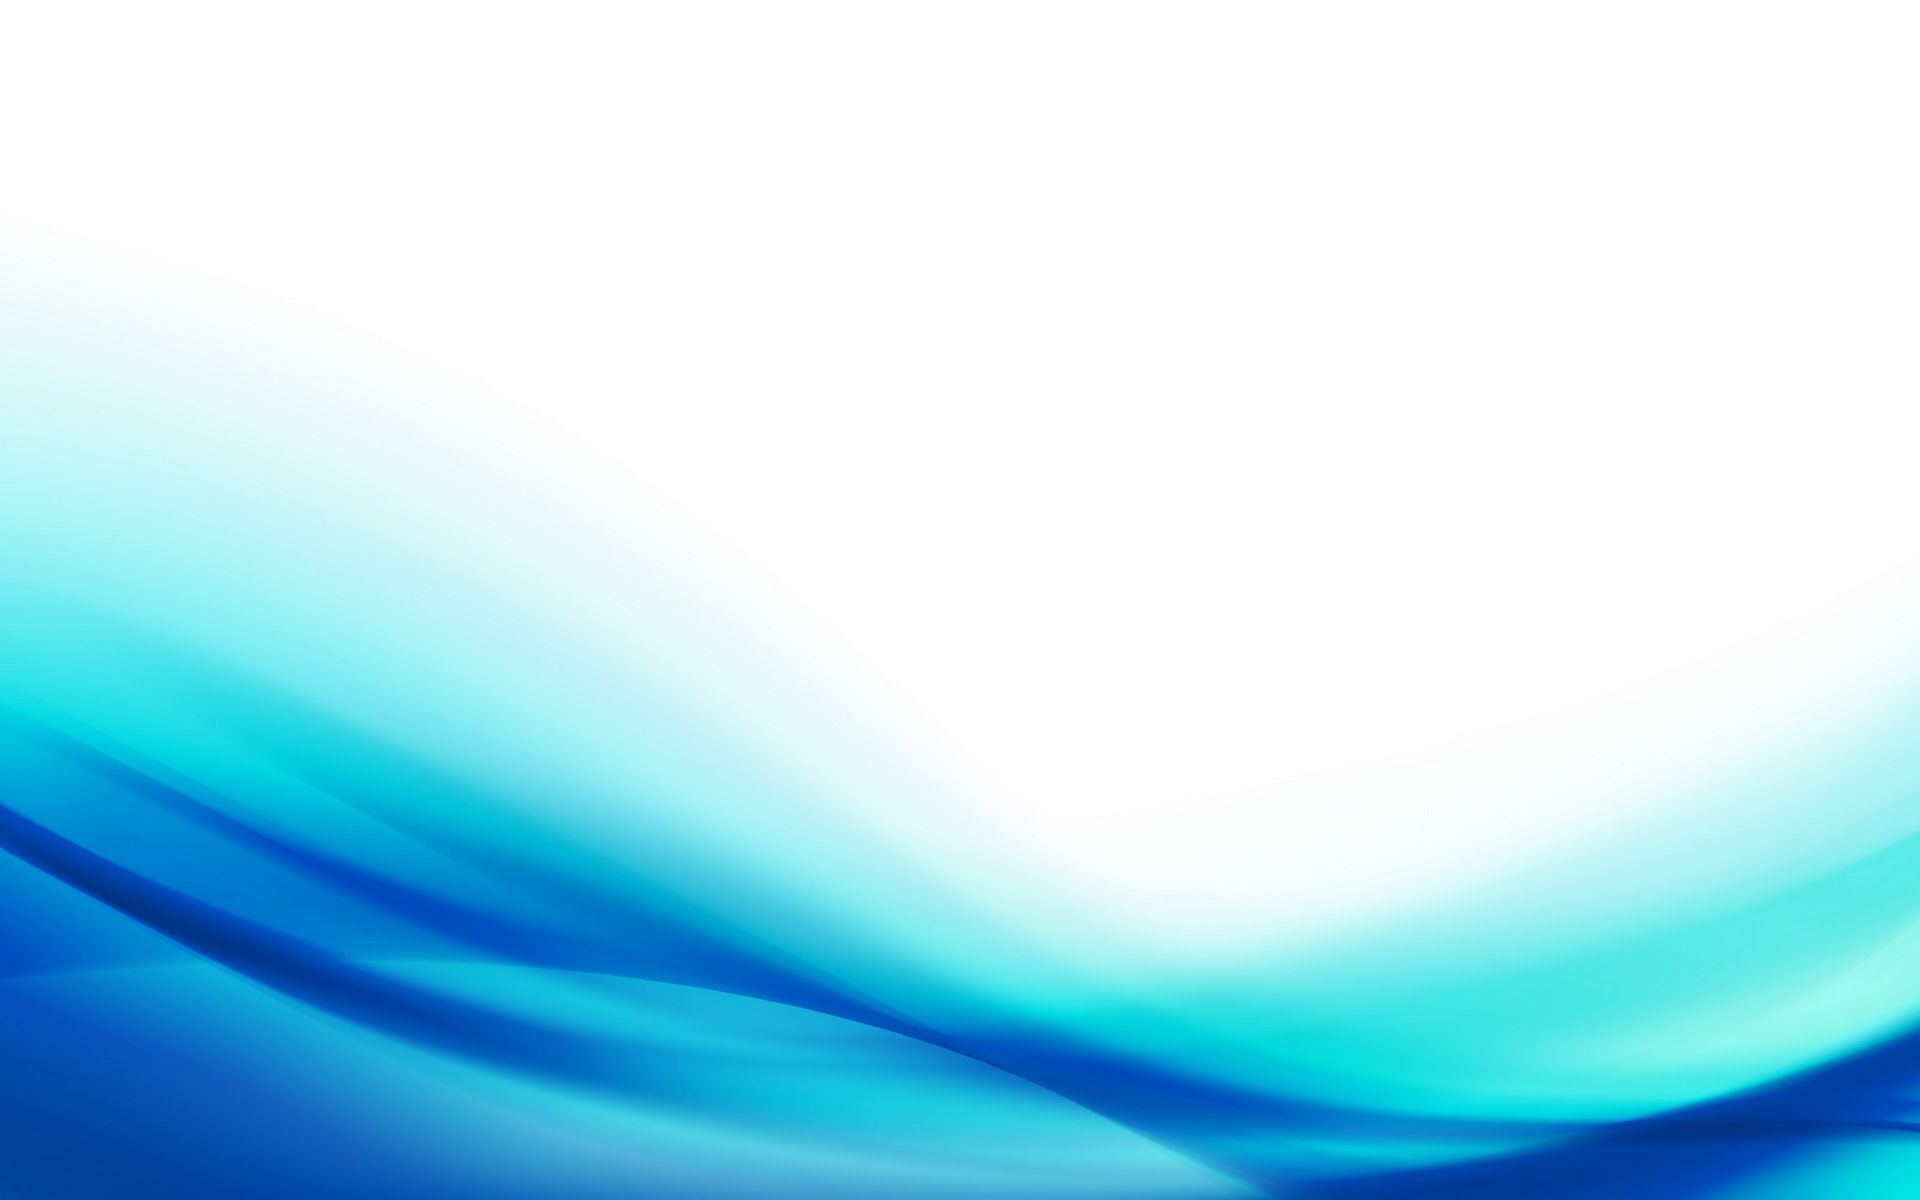 Aqua Blue Desktop Wallpaper Wallpaper HD. Blue background wallpaper, Blue wallpaper, Simple background design